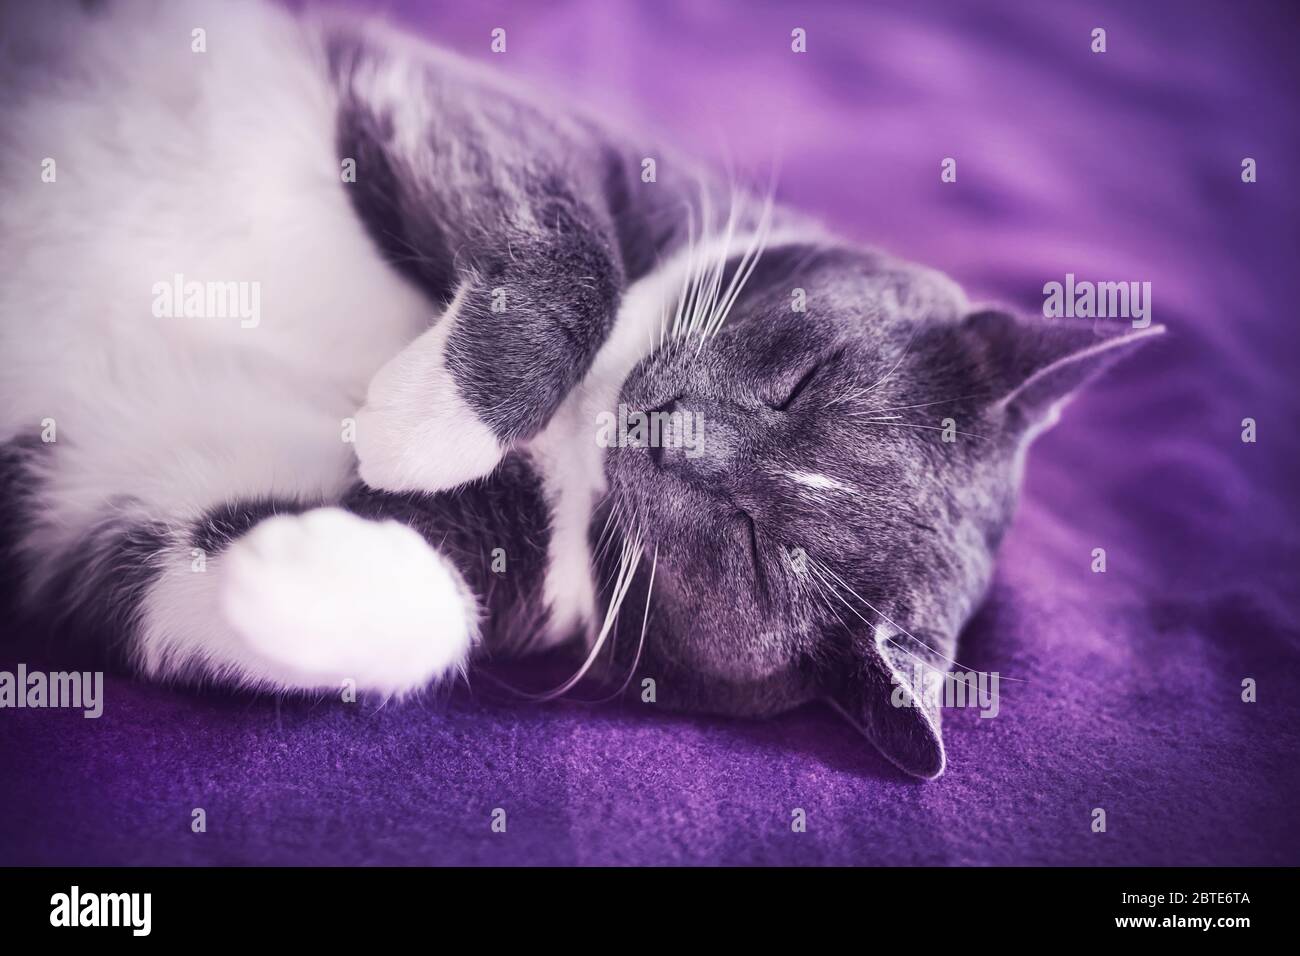 Un joli chat à fourrure grise s'endorme rapidement sur une couverture mauve avec son ventre. Un animal de compagnie. Temps de veille. Banque D'Images